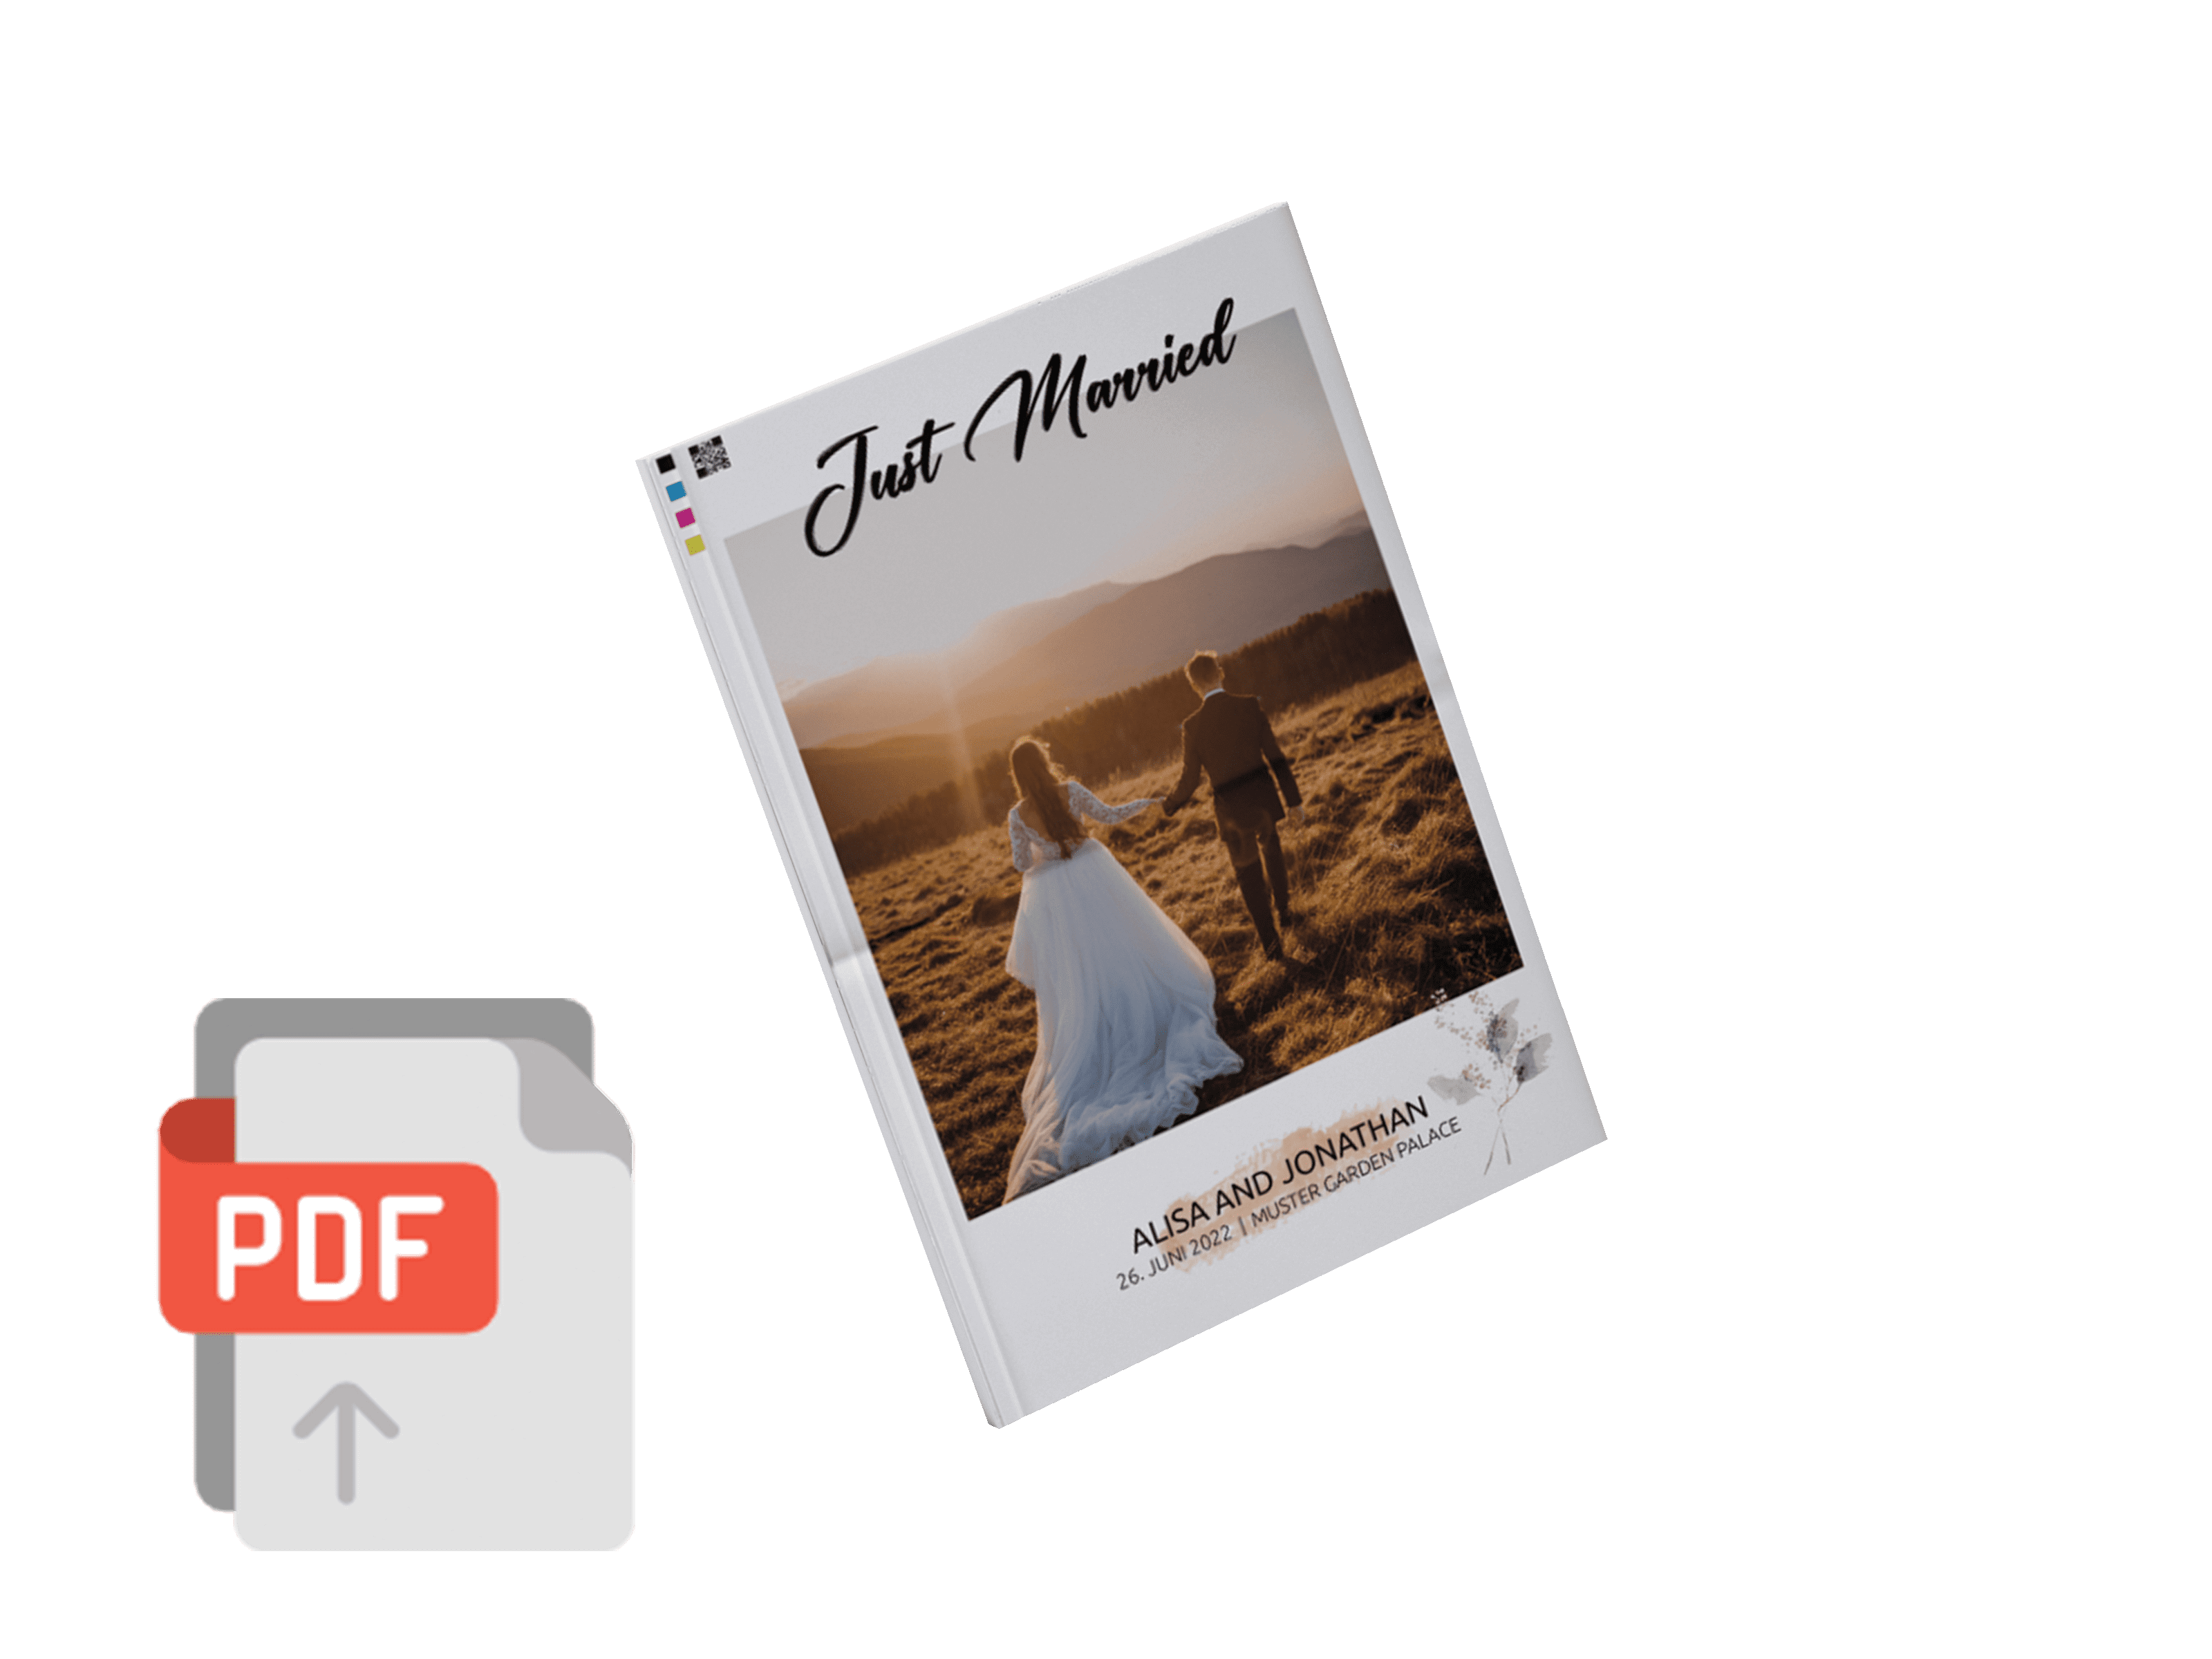 PDF als echte Hochzeitszeitung drucken lassen